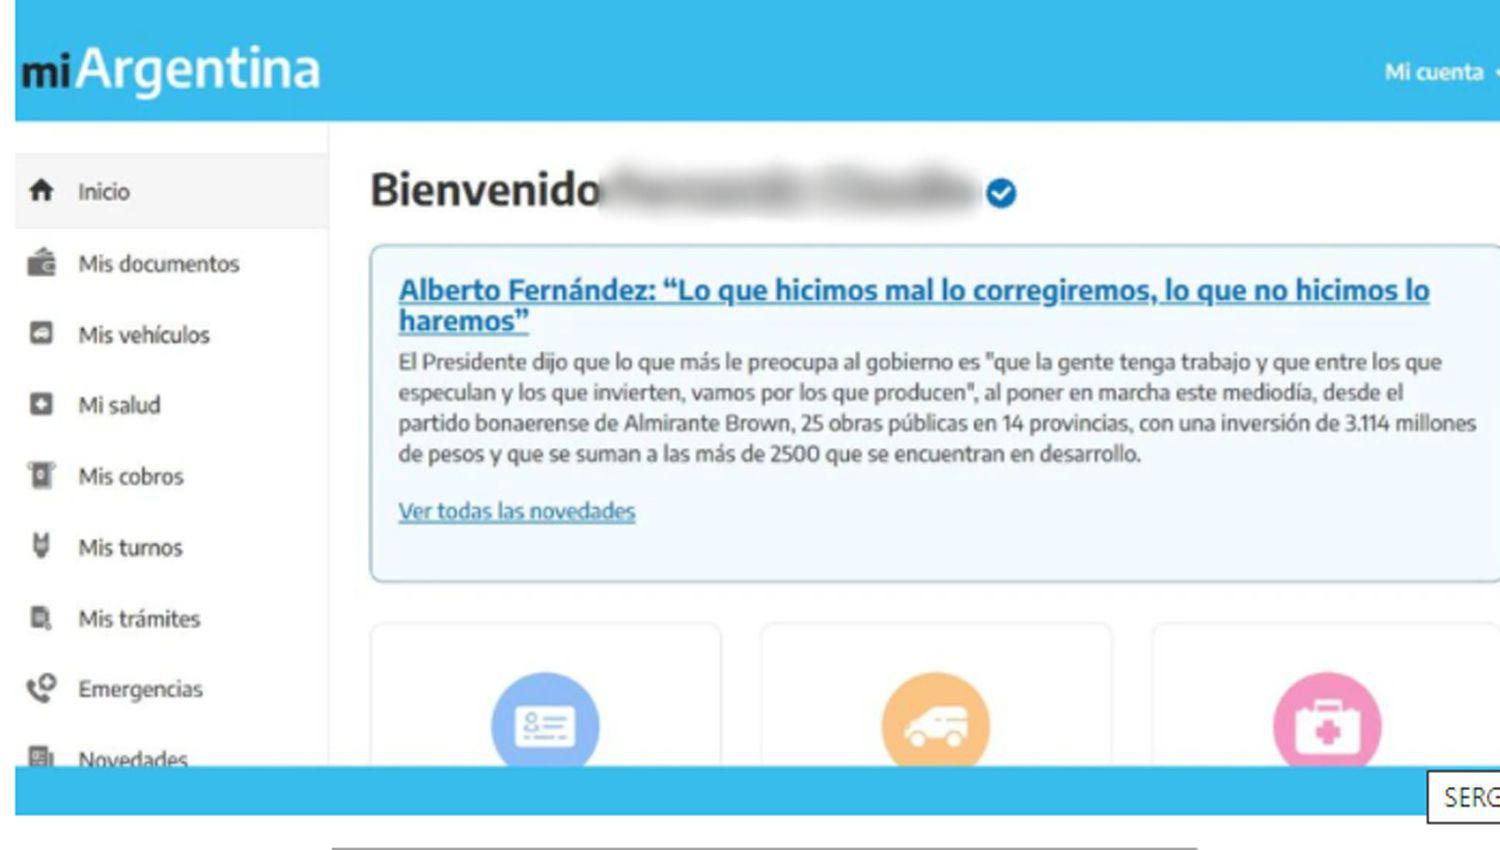 El gobierno usoacute la app ldquoMi Argentinardquo para hacer campantildea y dijo que fue ldquoun error del sistemardquo